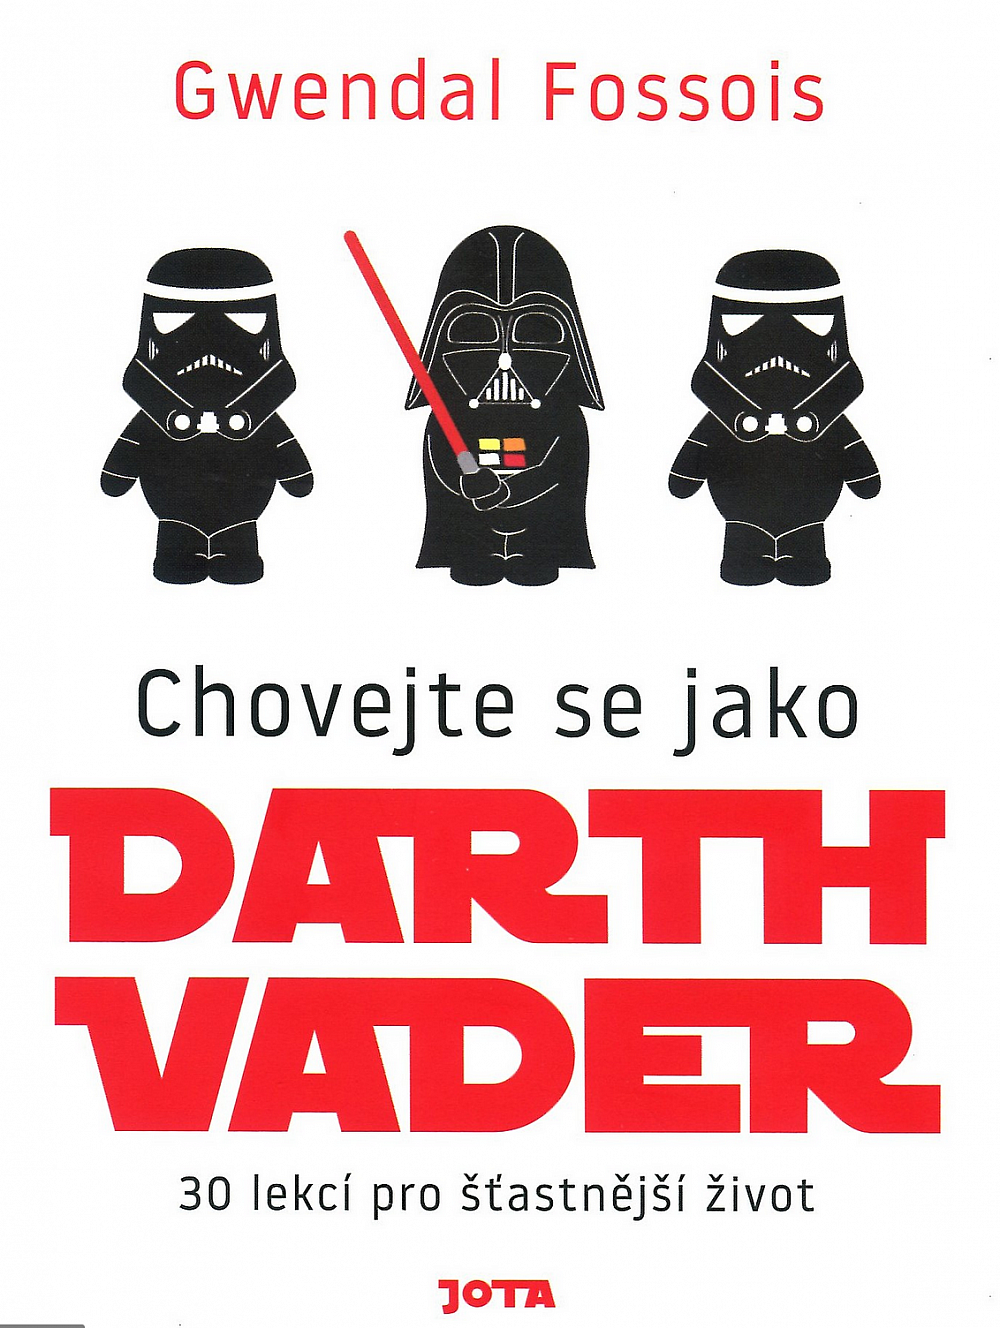 Chovejte se jako Darth Vader